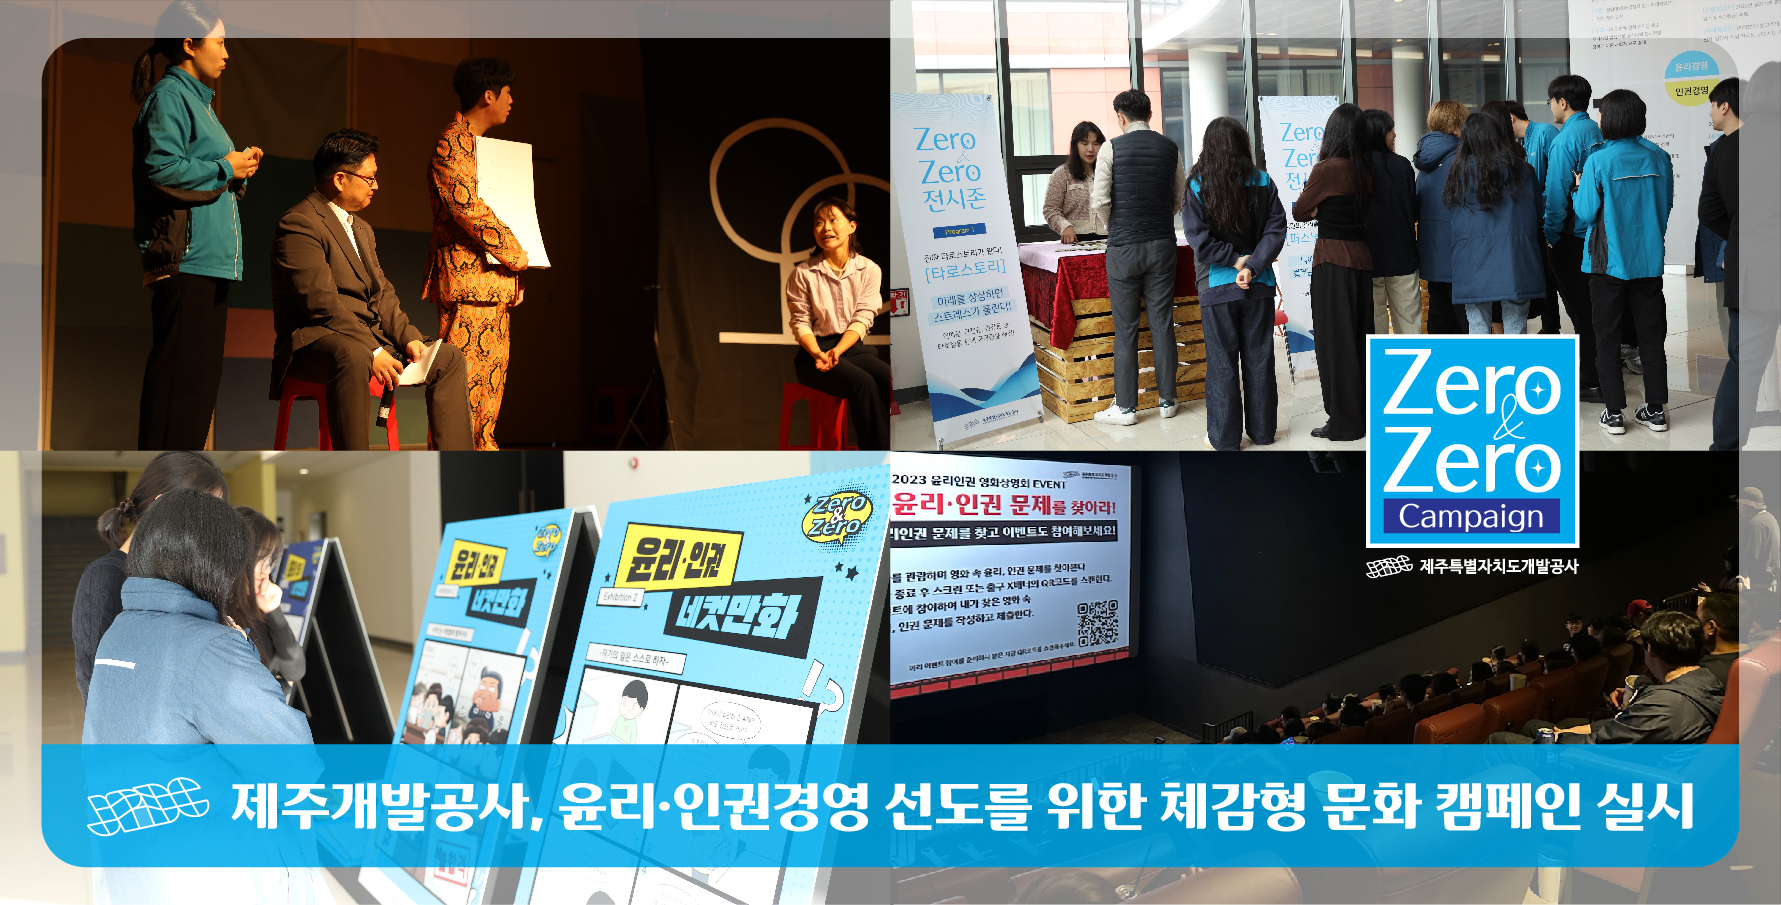 체감형 문화 캠페인으로 윤리ㆍ인권경영 선도